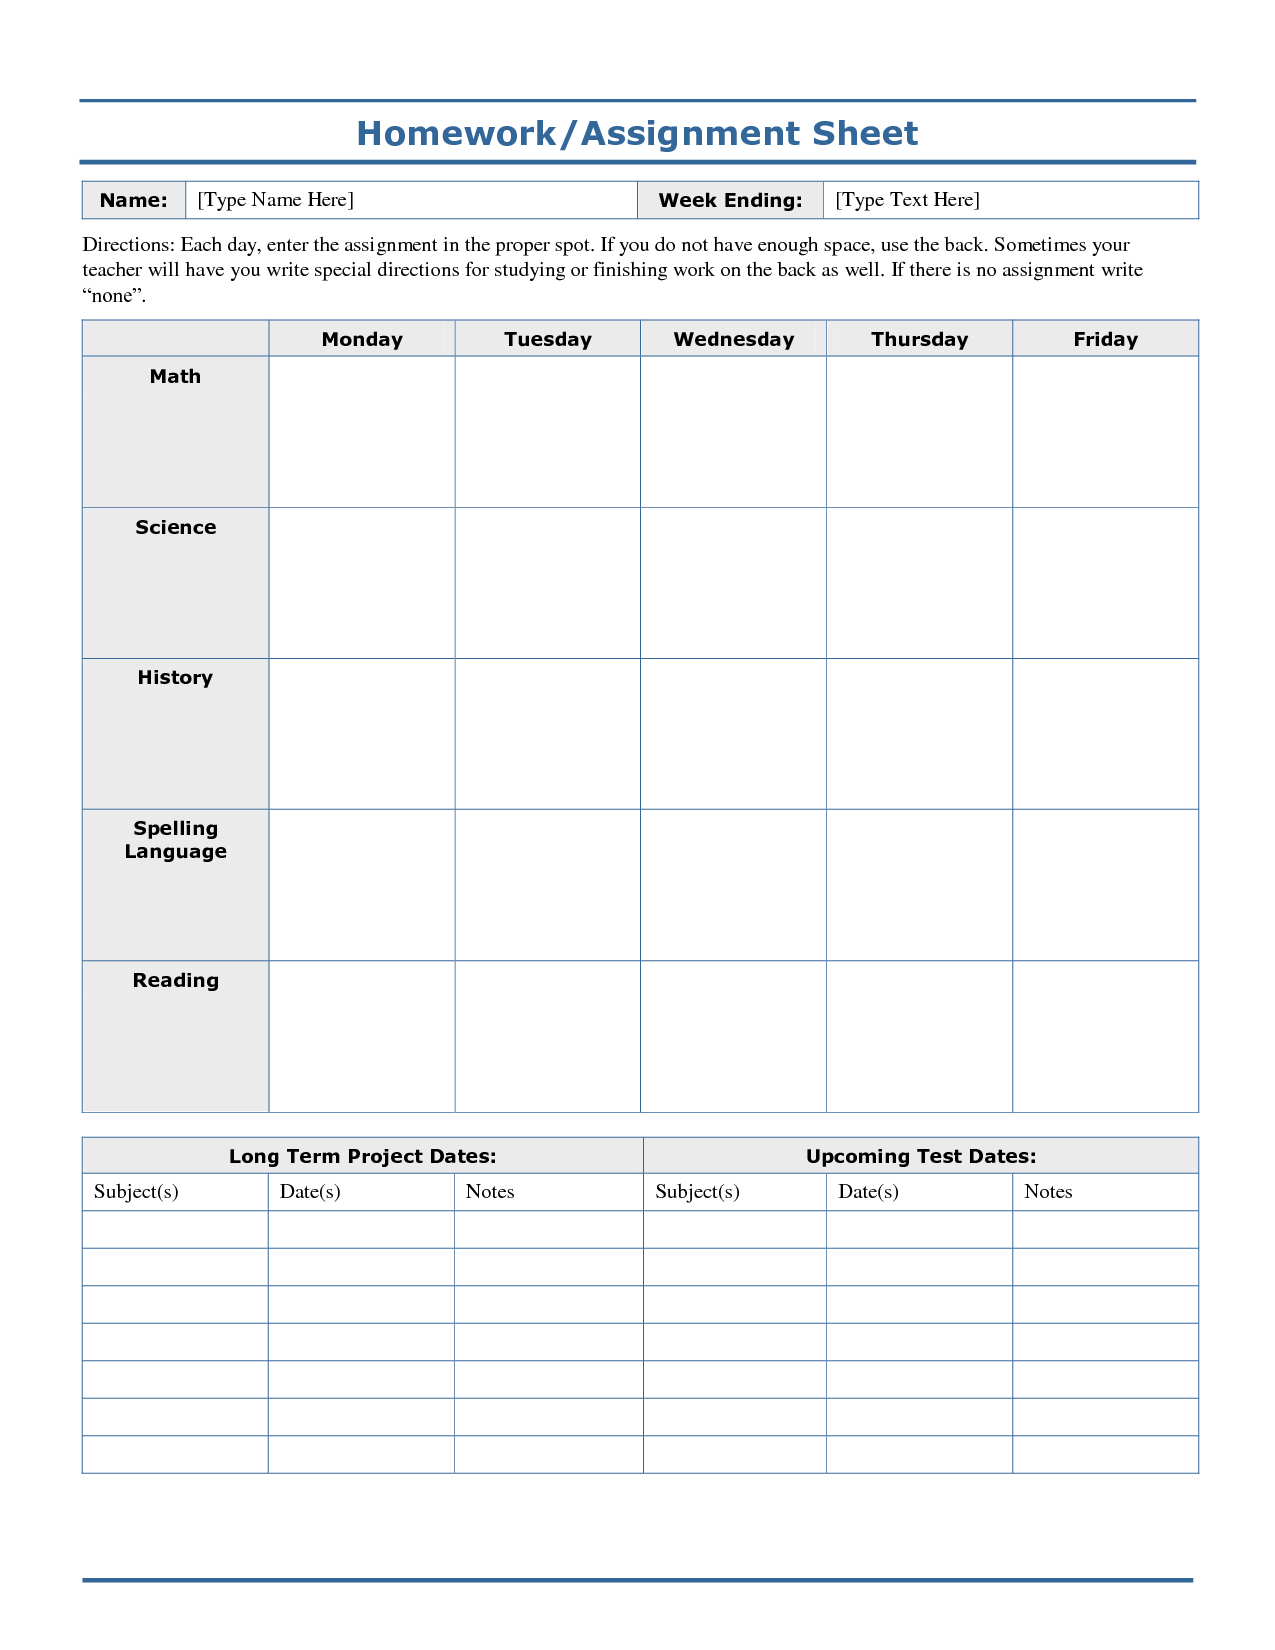 Weekly+Homework+Assignment+Sheet+Template | Logs | Homework Sheet - Free Printable Homework Assignment Sheets